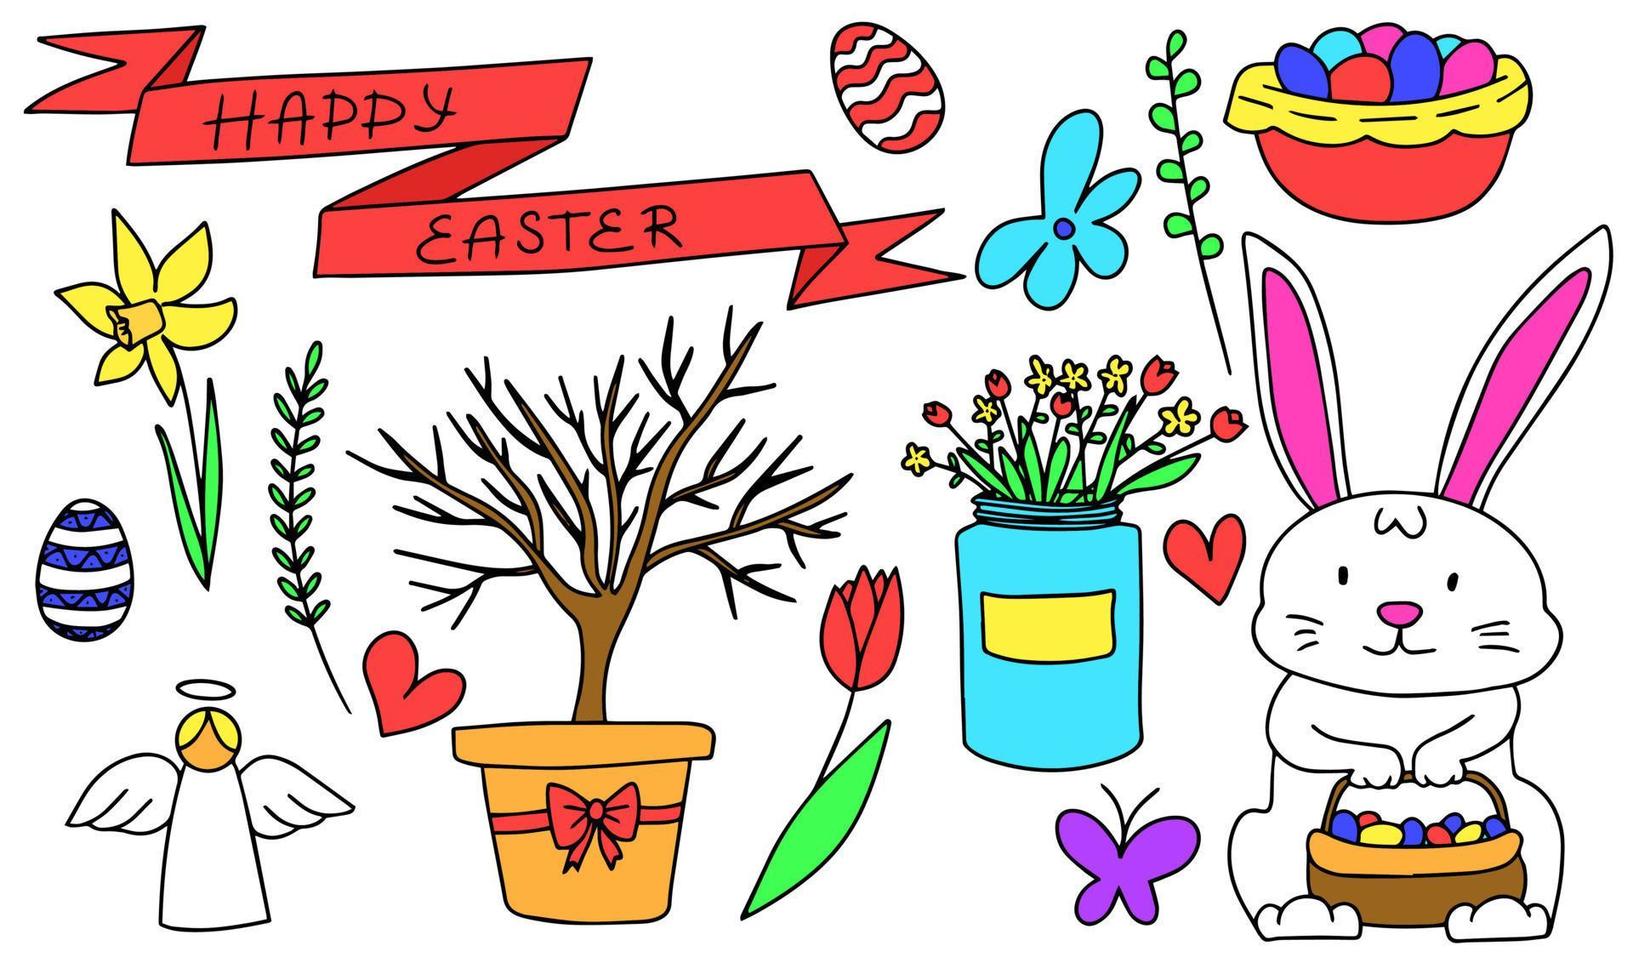 contento Pascua de Resurrección símbolos en garabatear estilo. conejito, huevos, flores vector ilustración.